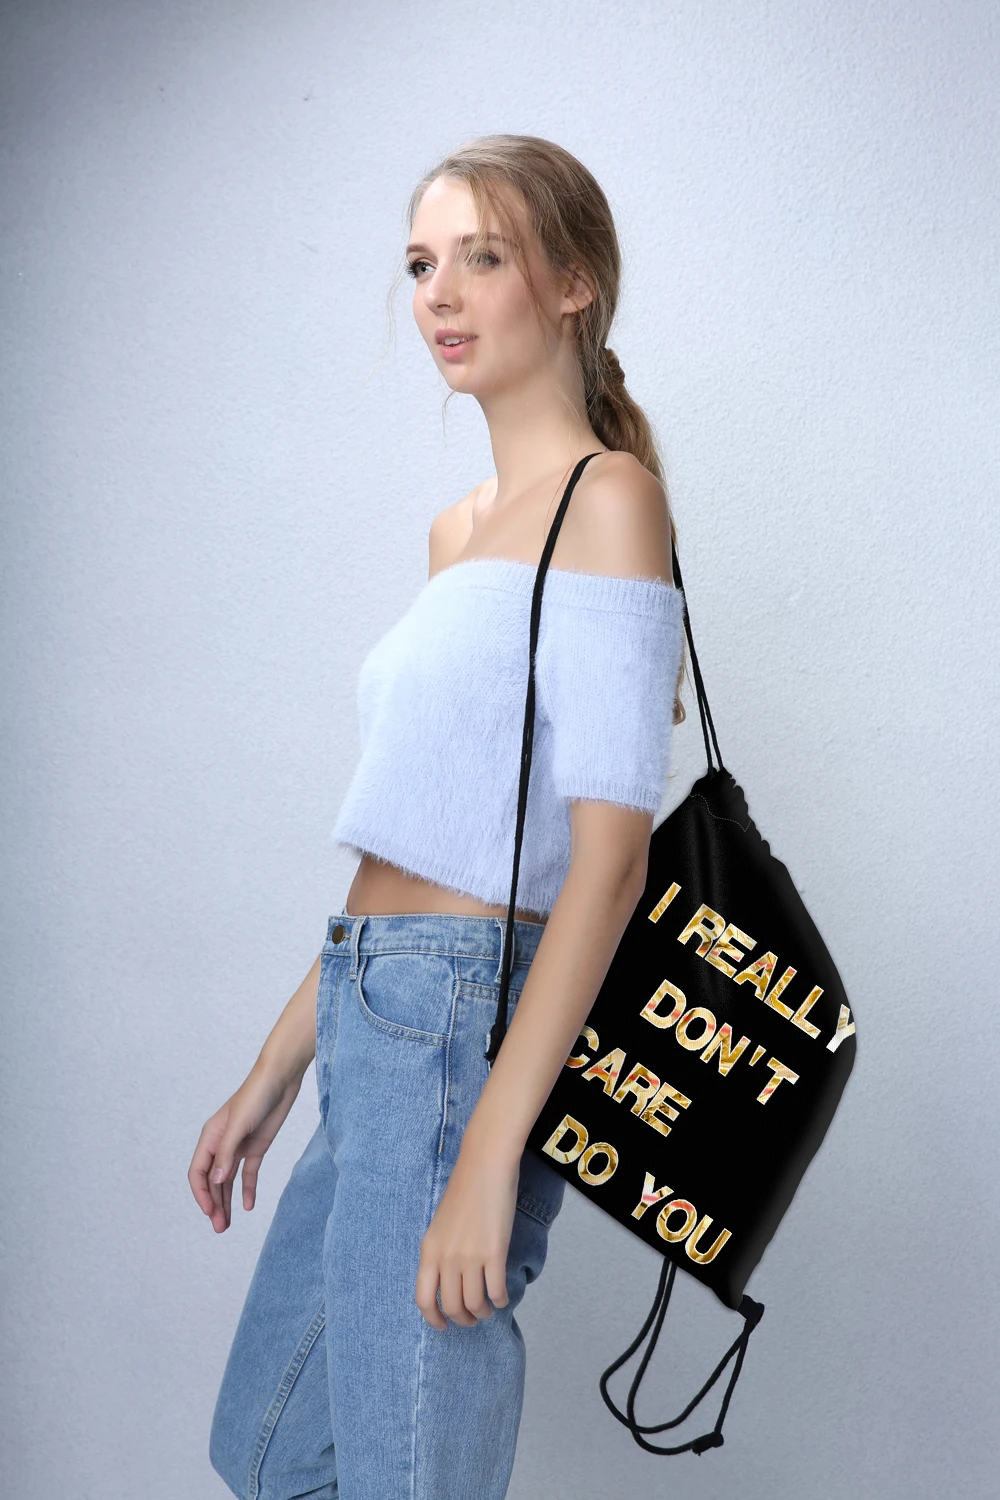 Deanfun черная сумка на шнурке с надписью для женщин 3D печать школьные сумки унисекс 60143